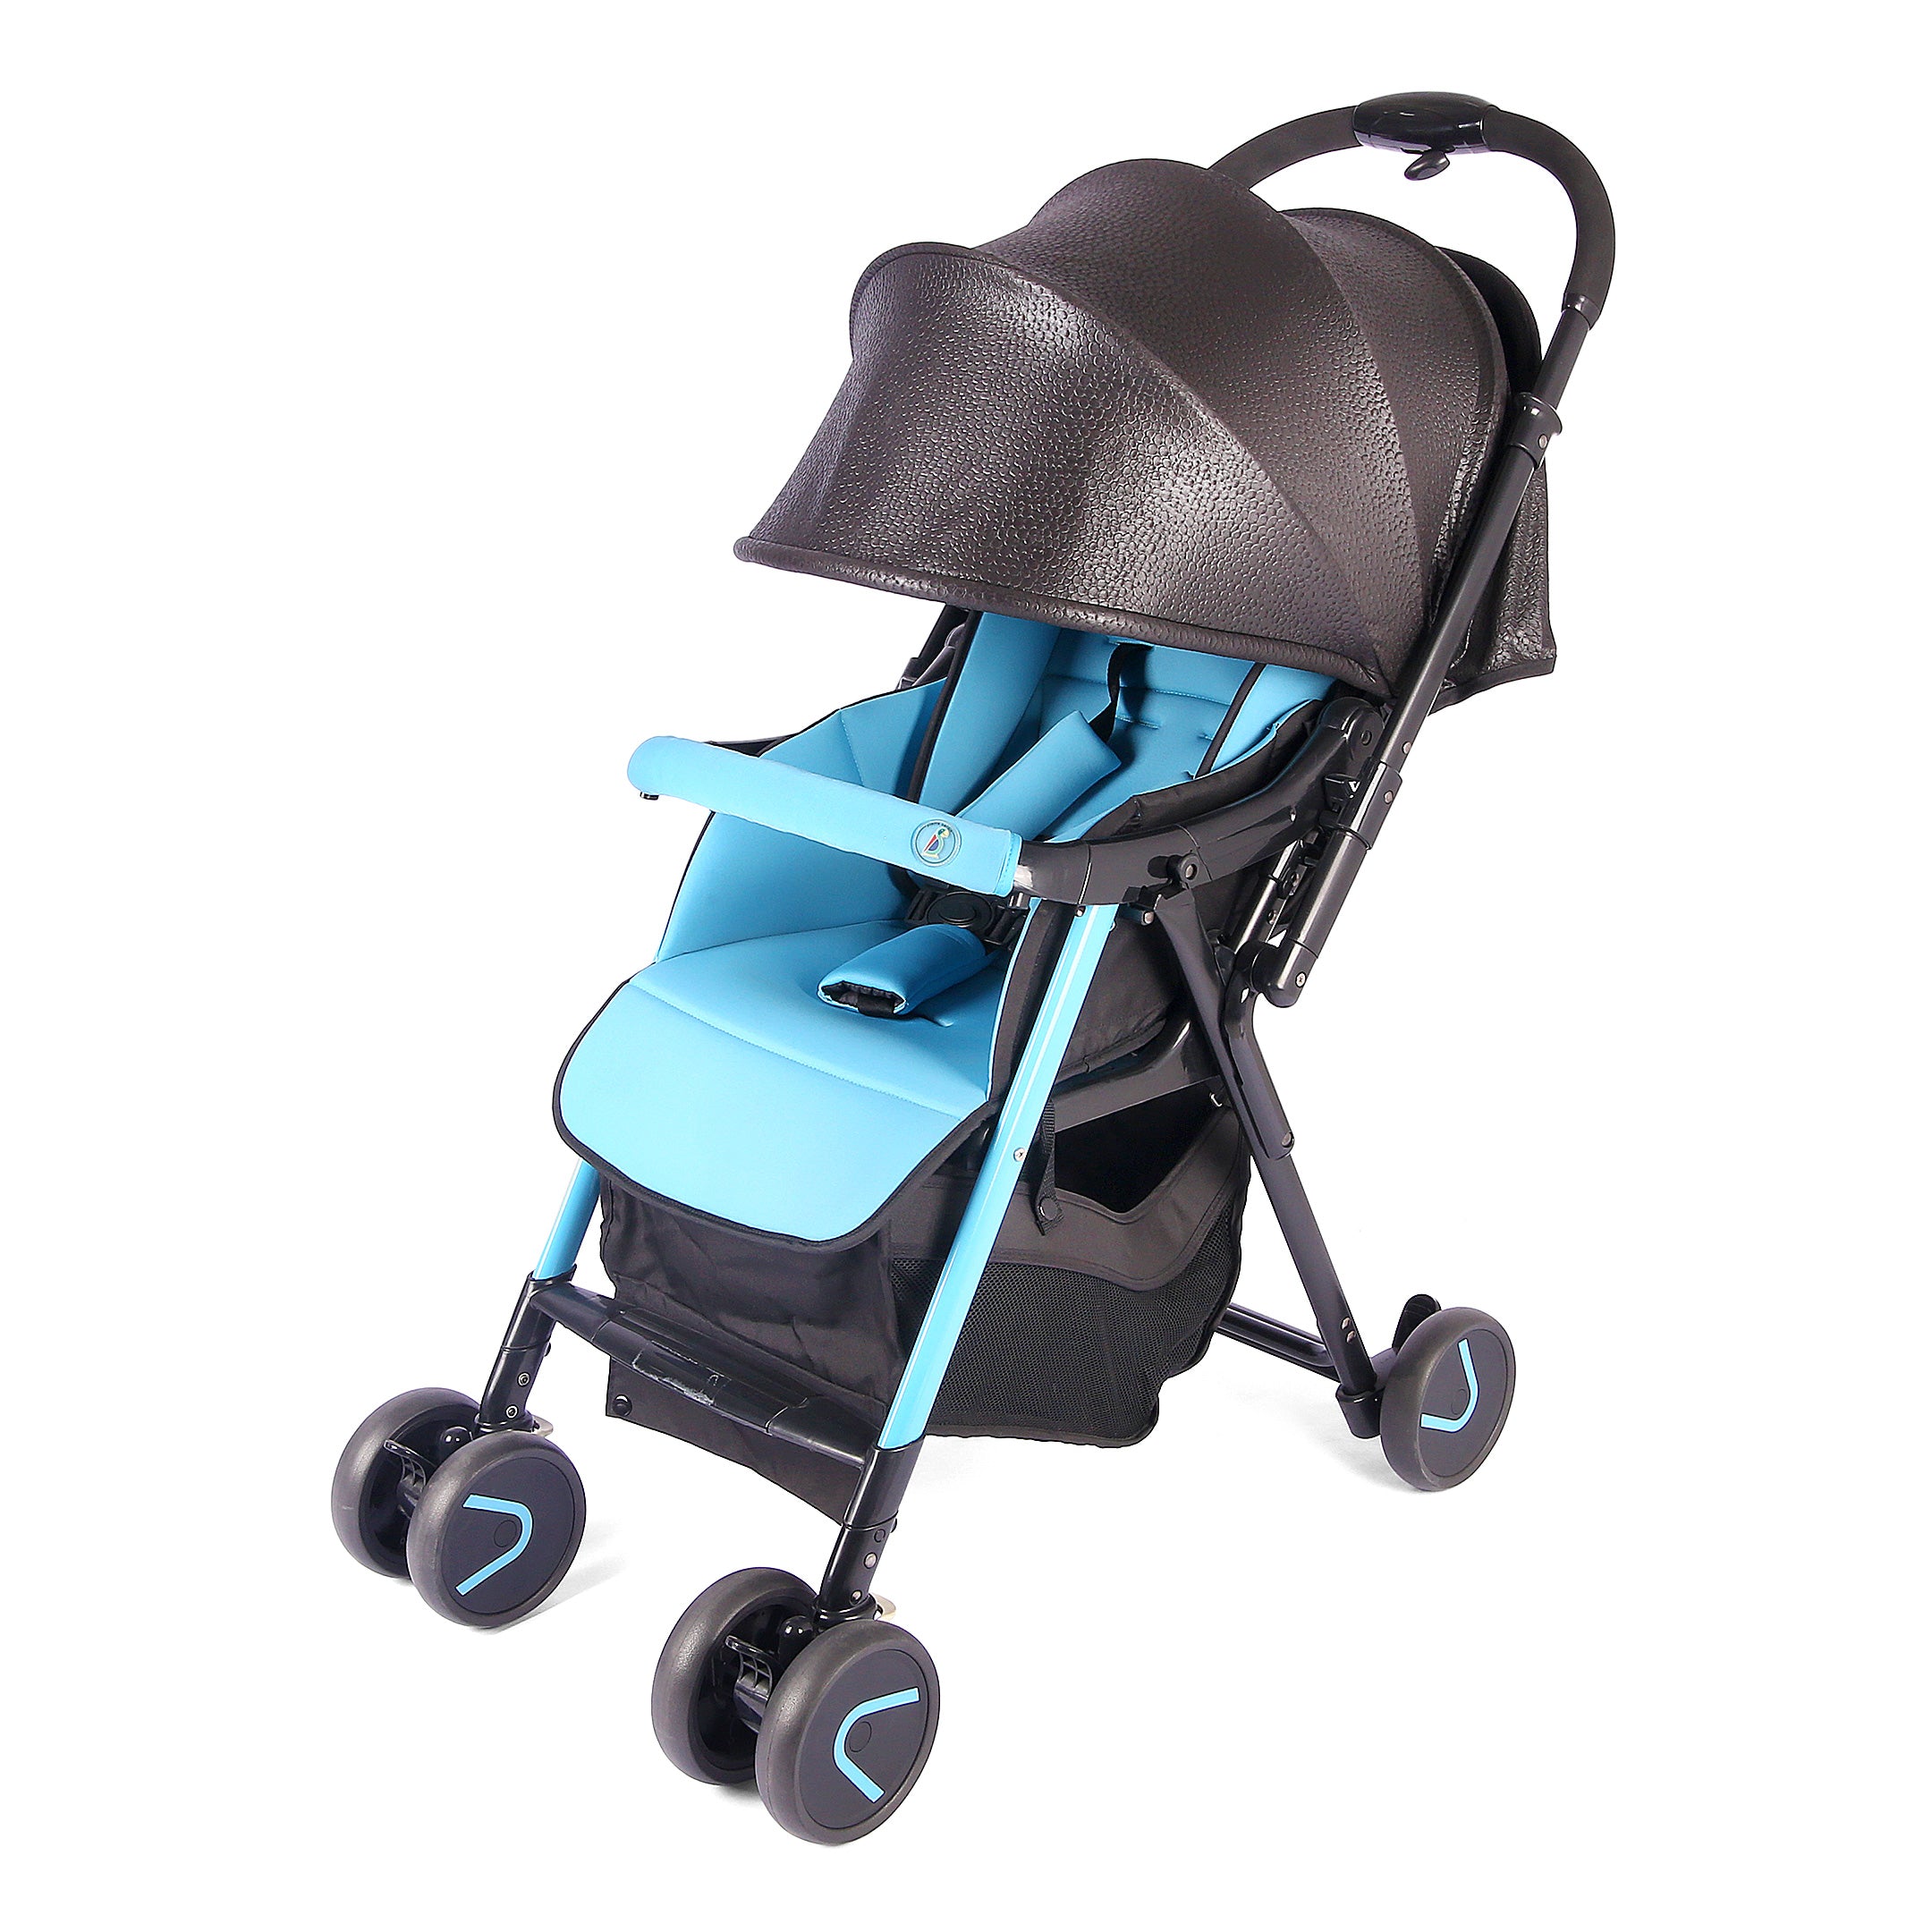 Pierre Cardin Baby Stroller - Sky Blue